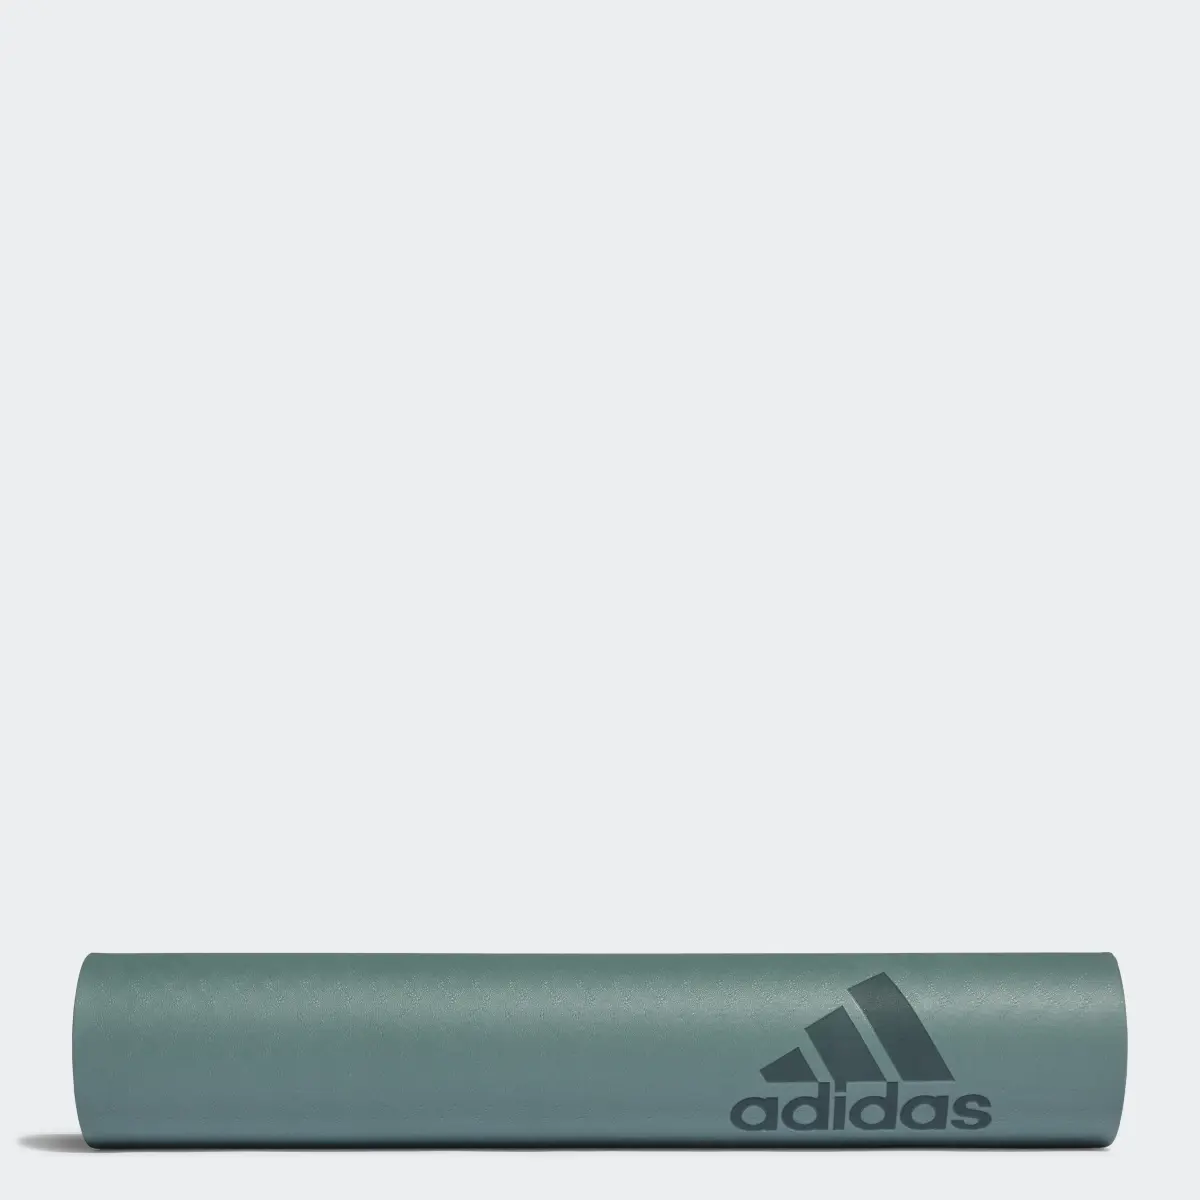 Adidas Premium Yoga Mat 5 mm. 1